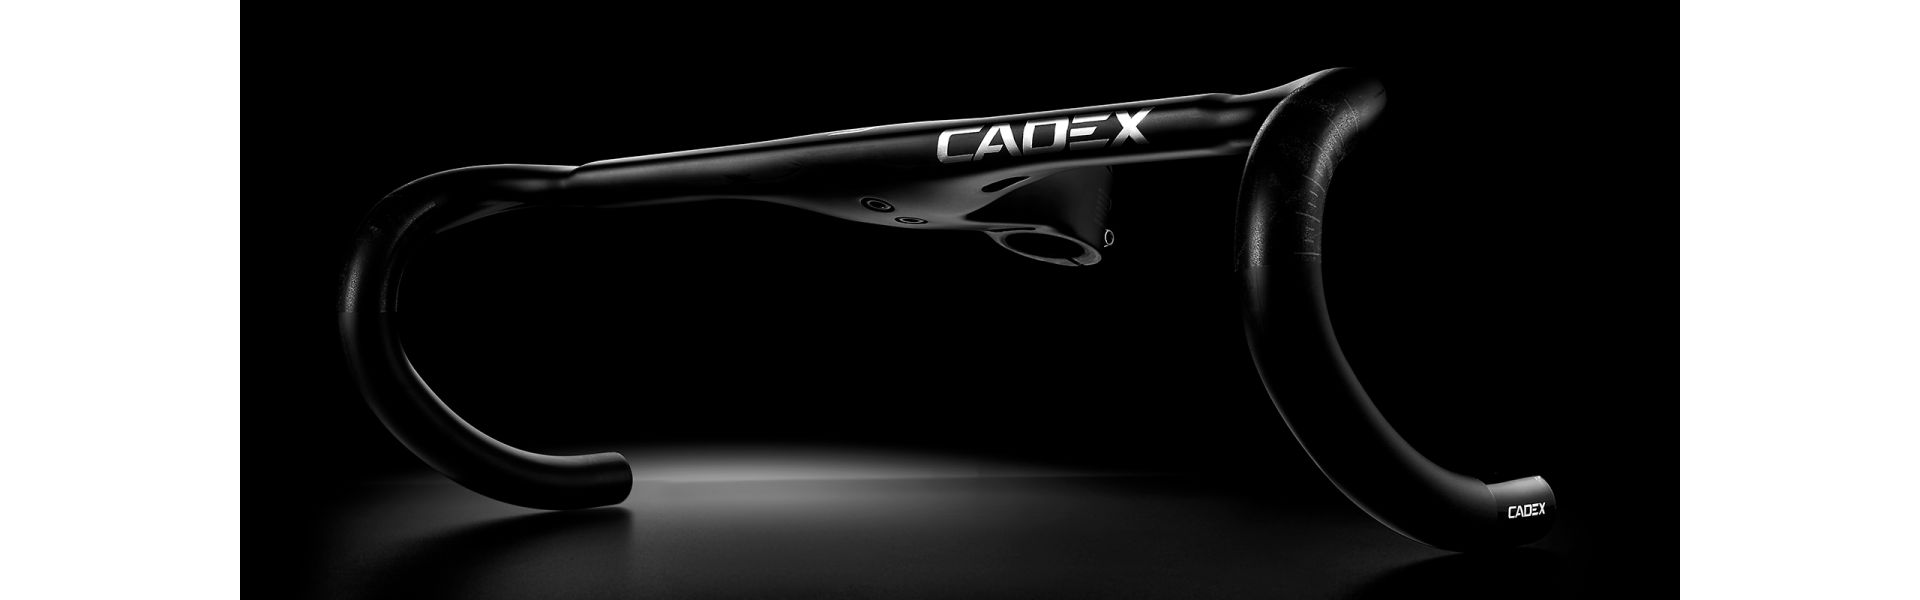 Cadex Aero carbon racestuur